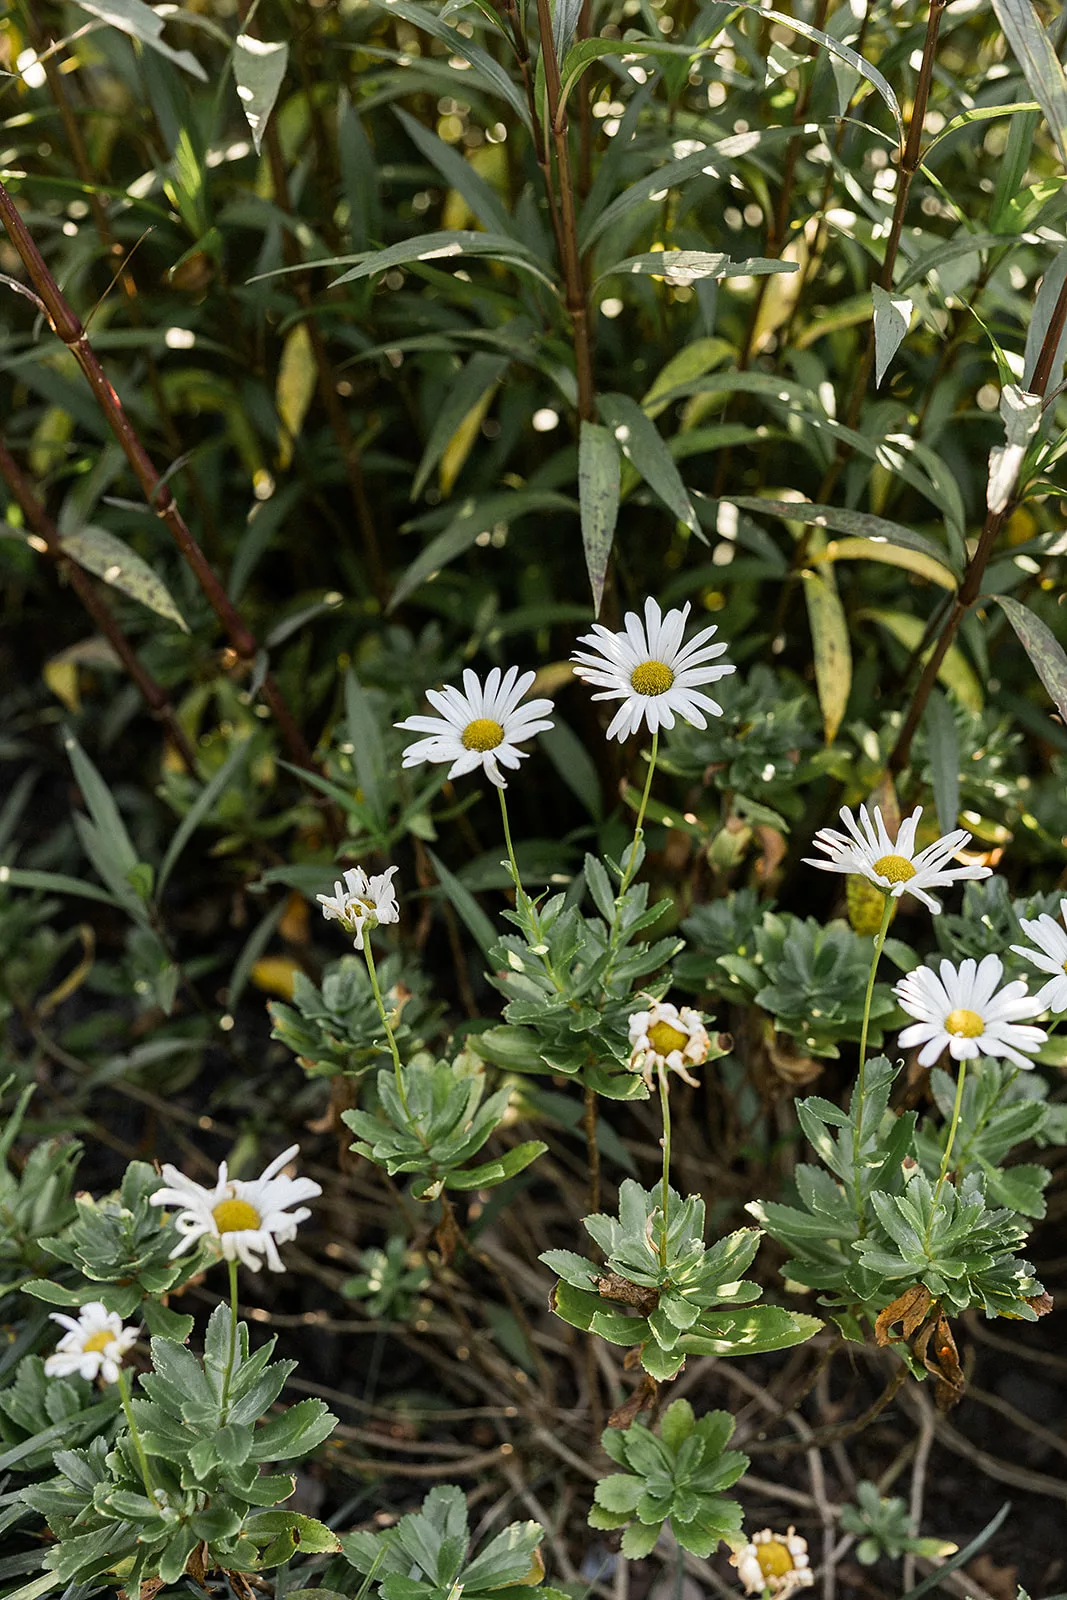 White daisies in a garden